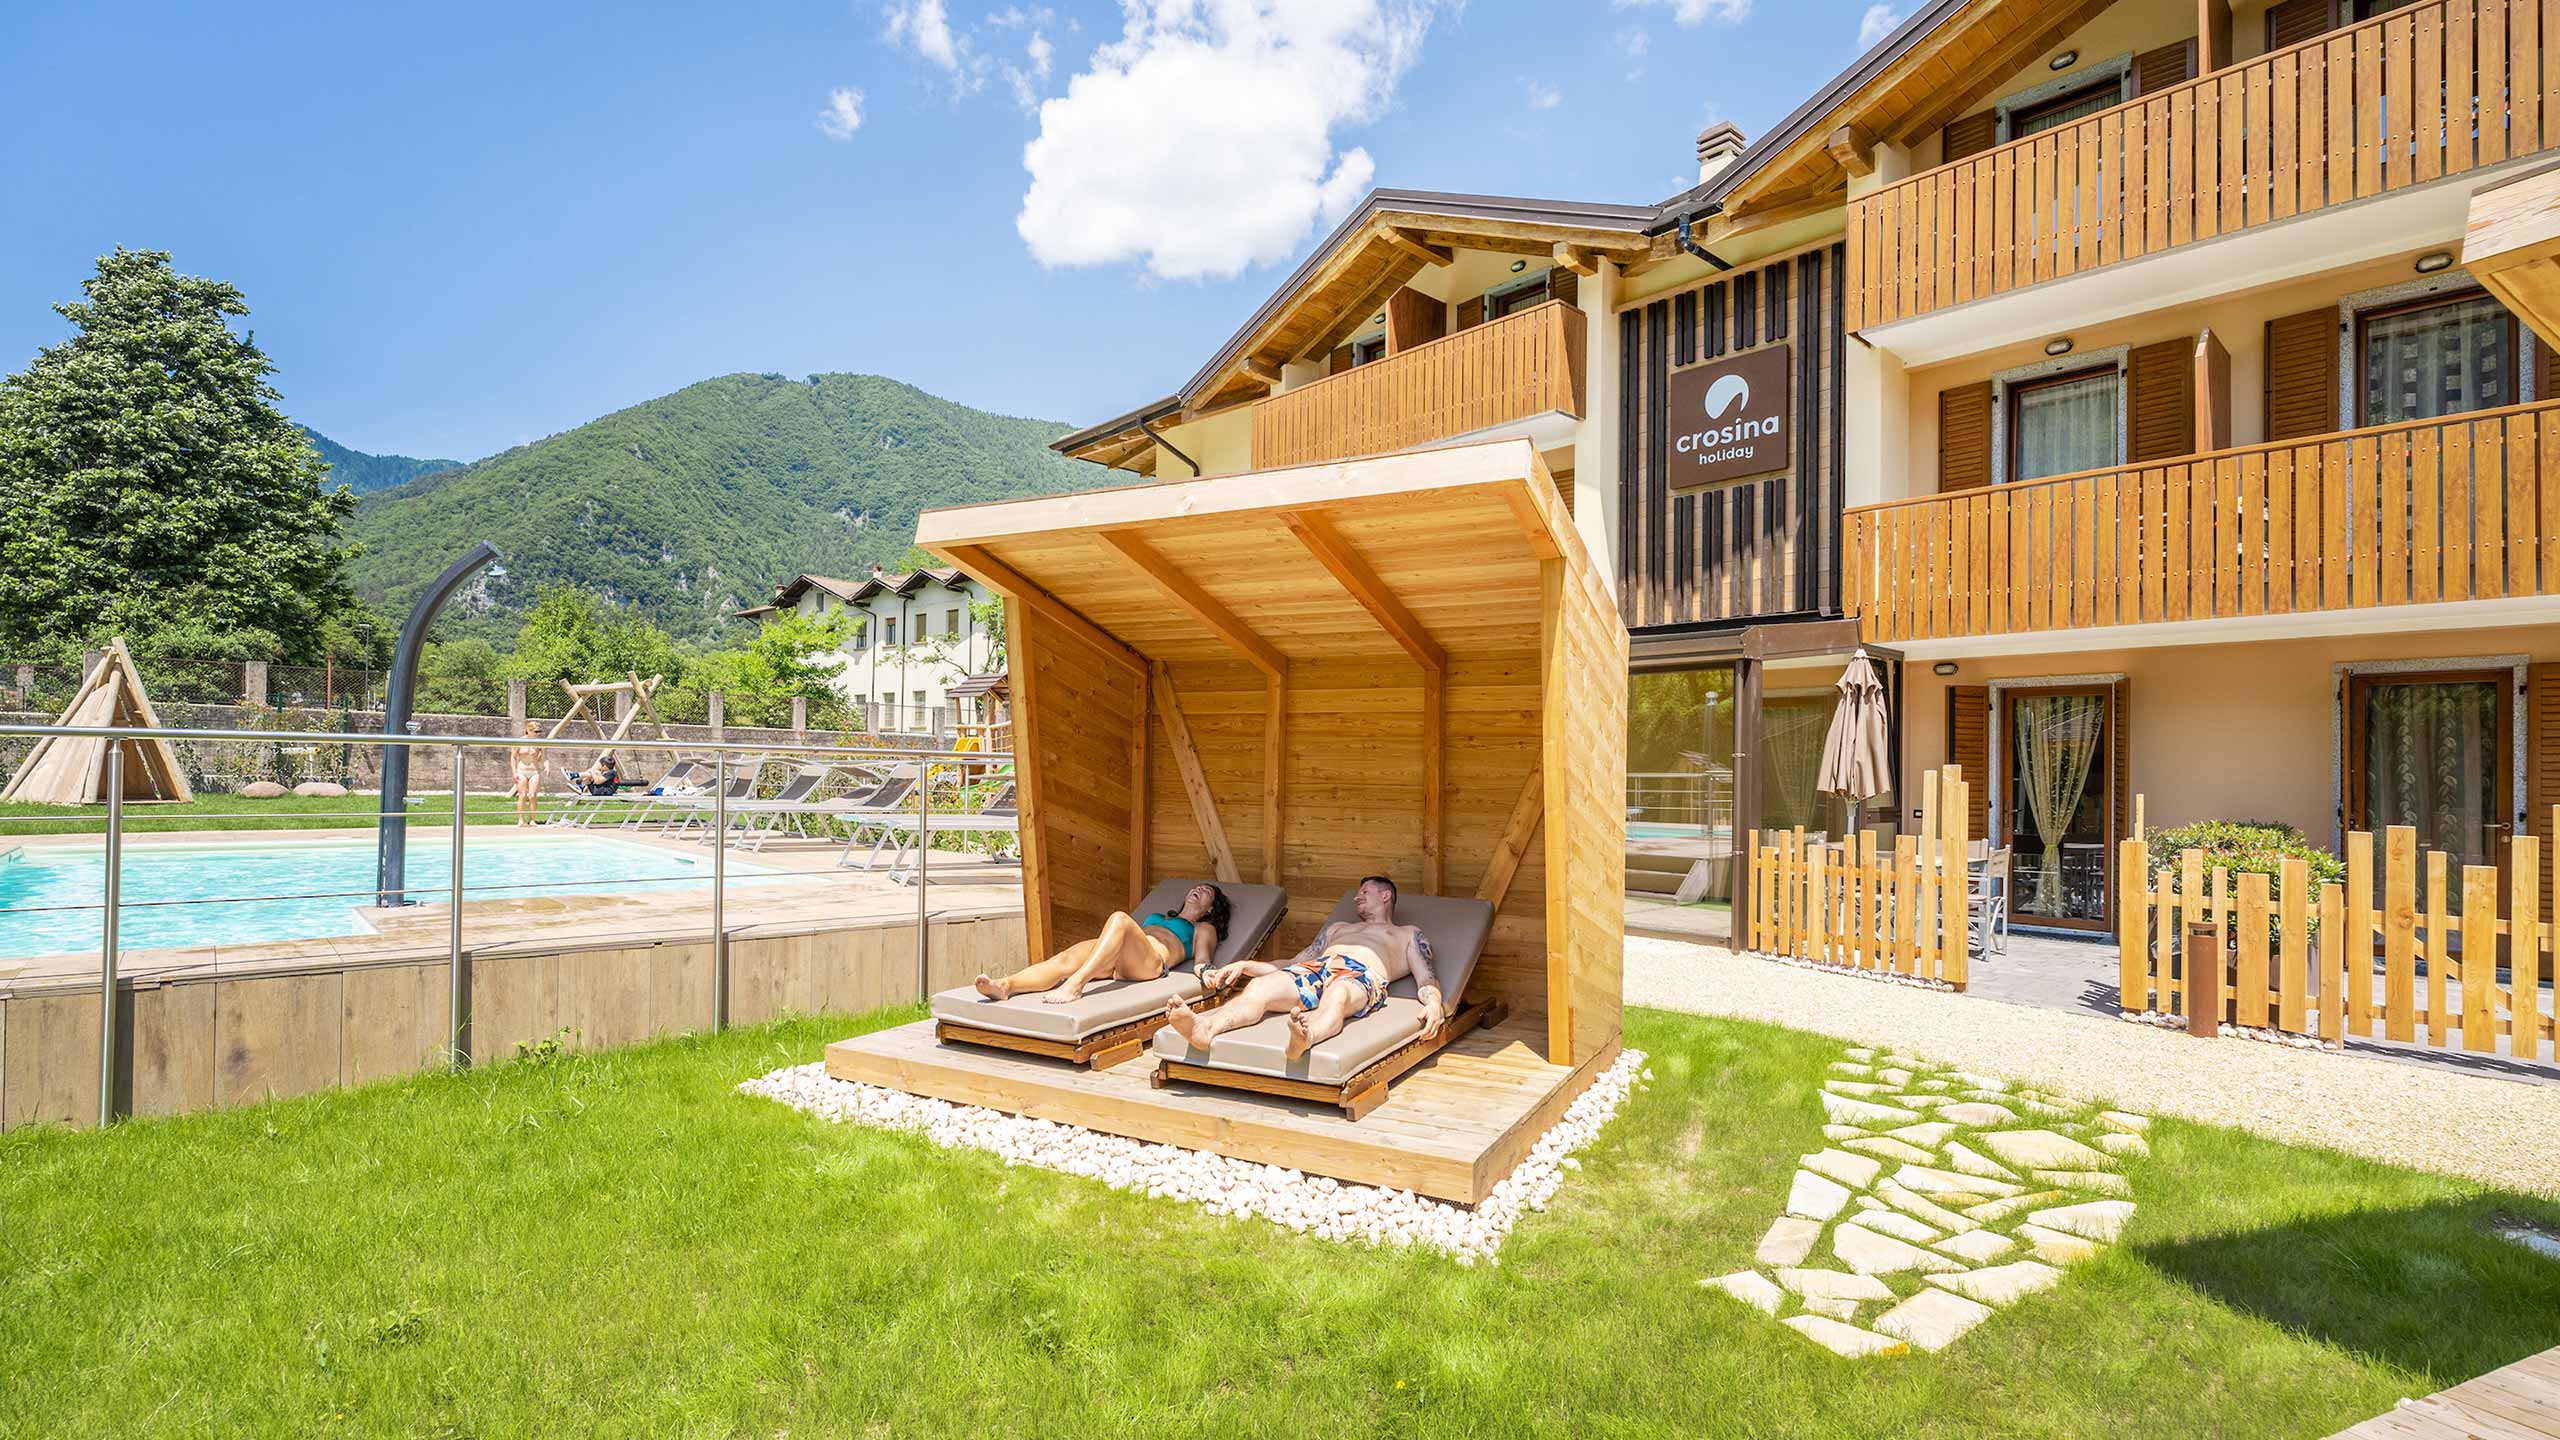 Crosina Holiday – Ferienwohnungen in der Nähe des Ledrosees im Trentino für einen Paar- oder Familienurlaub Willkommen in der Residence Toli